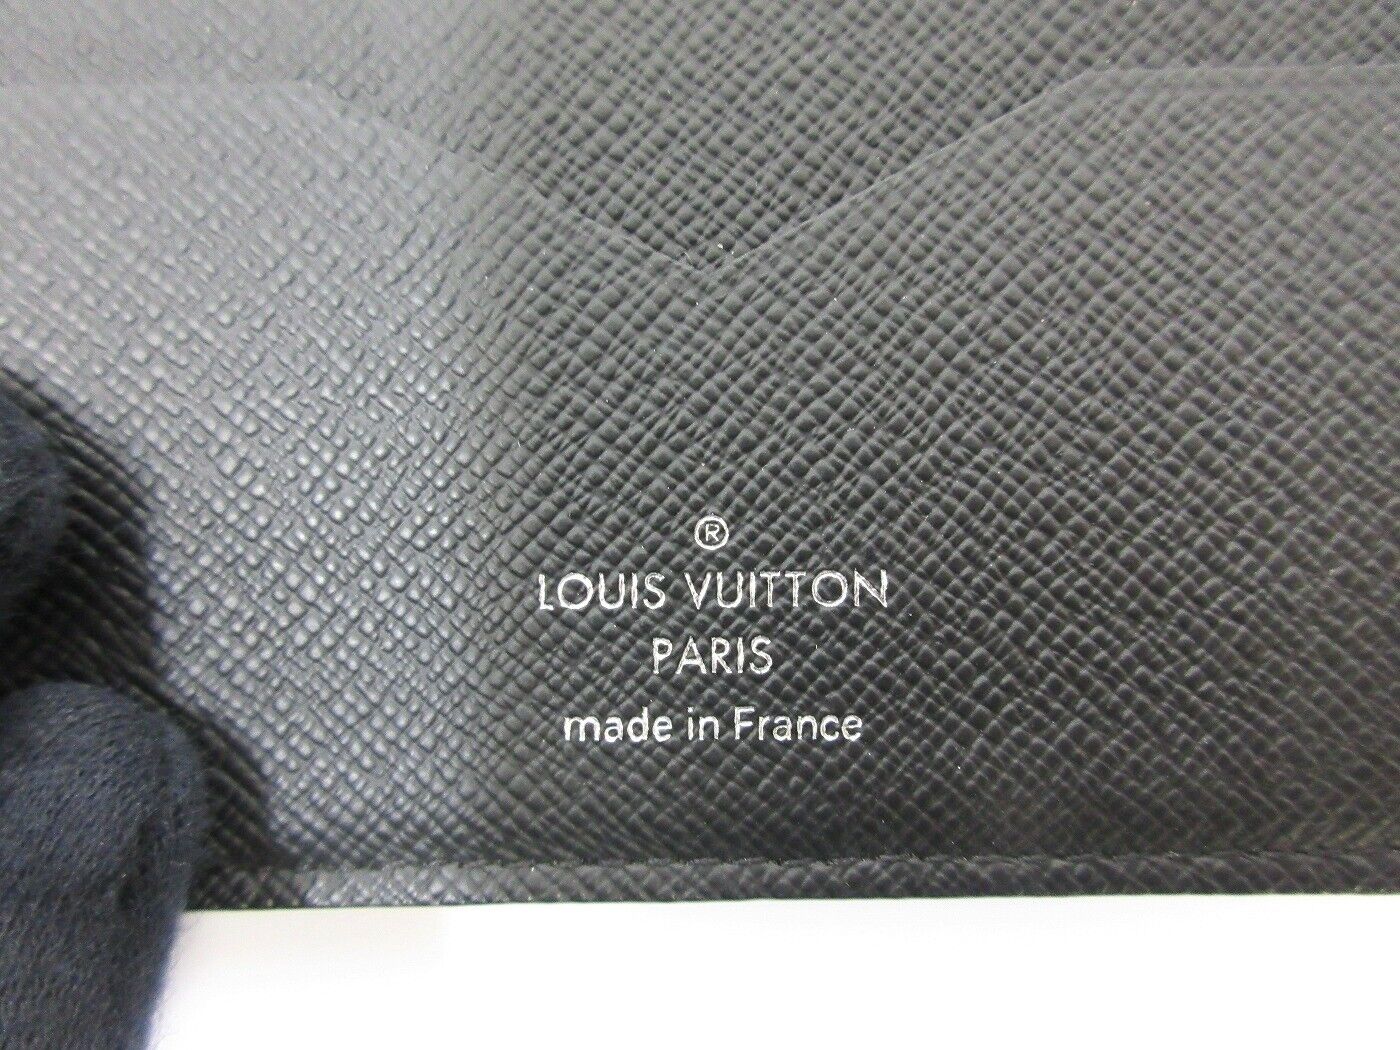 Buy Louis Vuitton LOUISVUITTON Size:- M62978 Portefeuille Pance